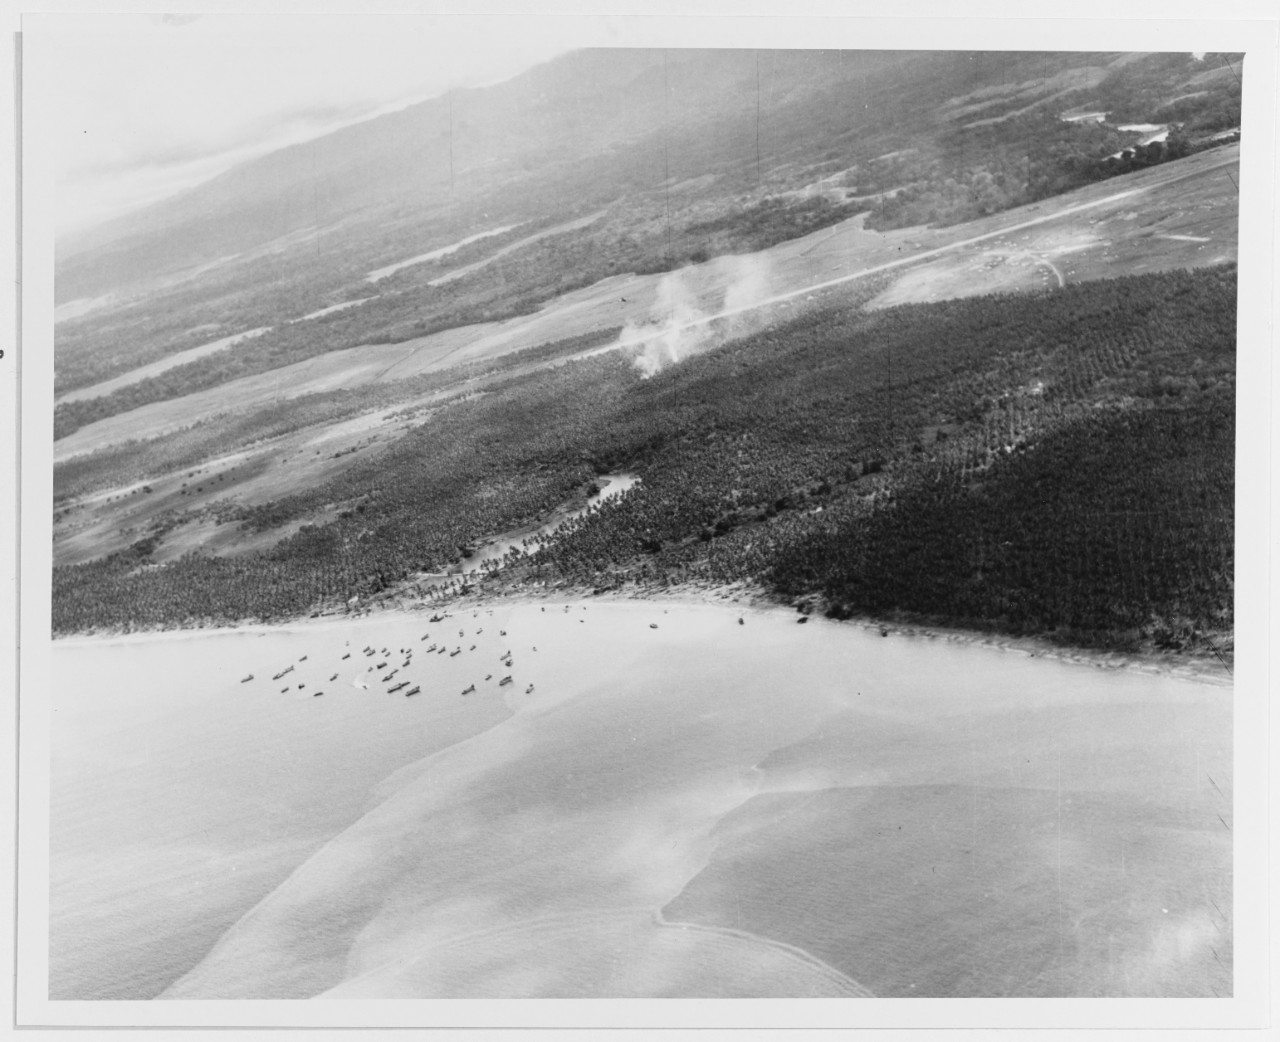 Guadalcanal Campaign, 1942-43